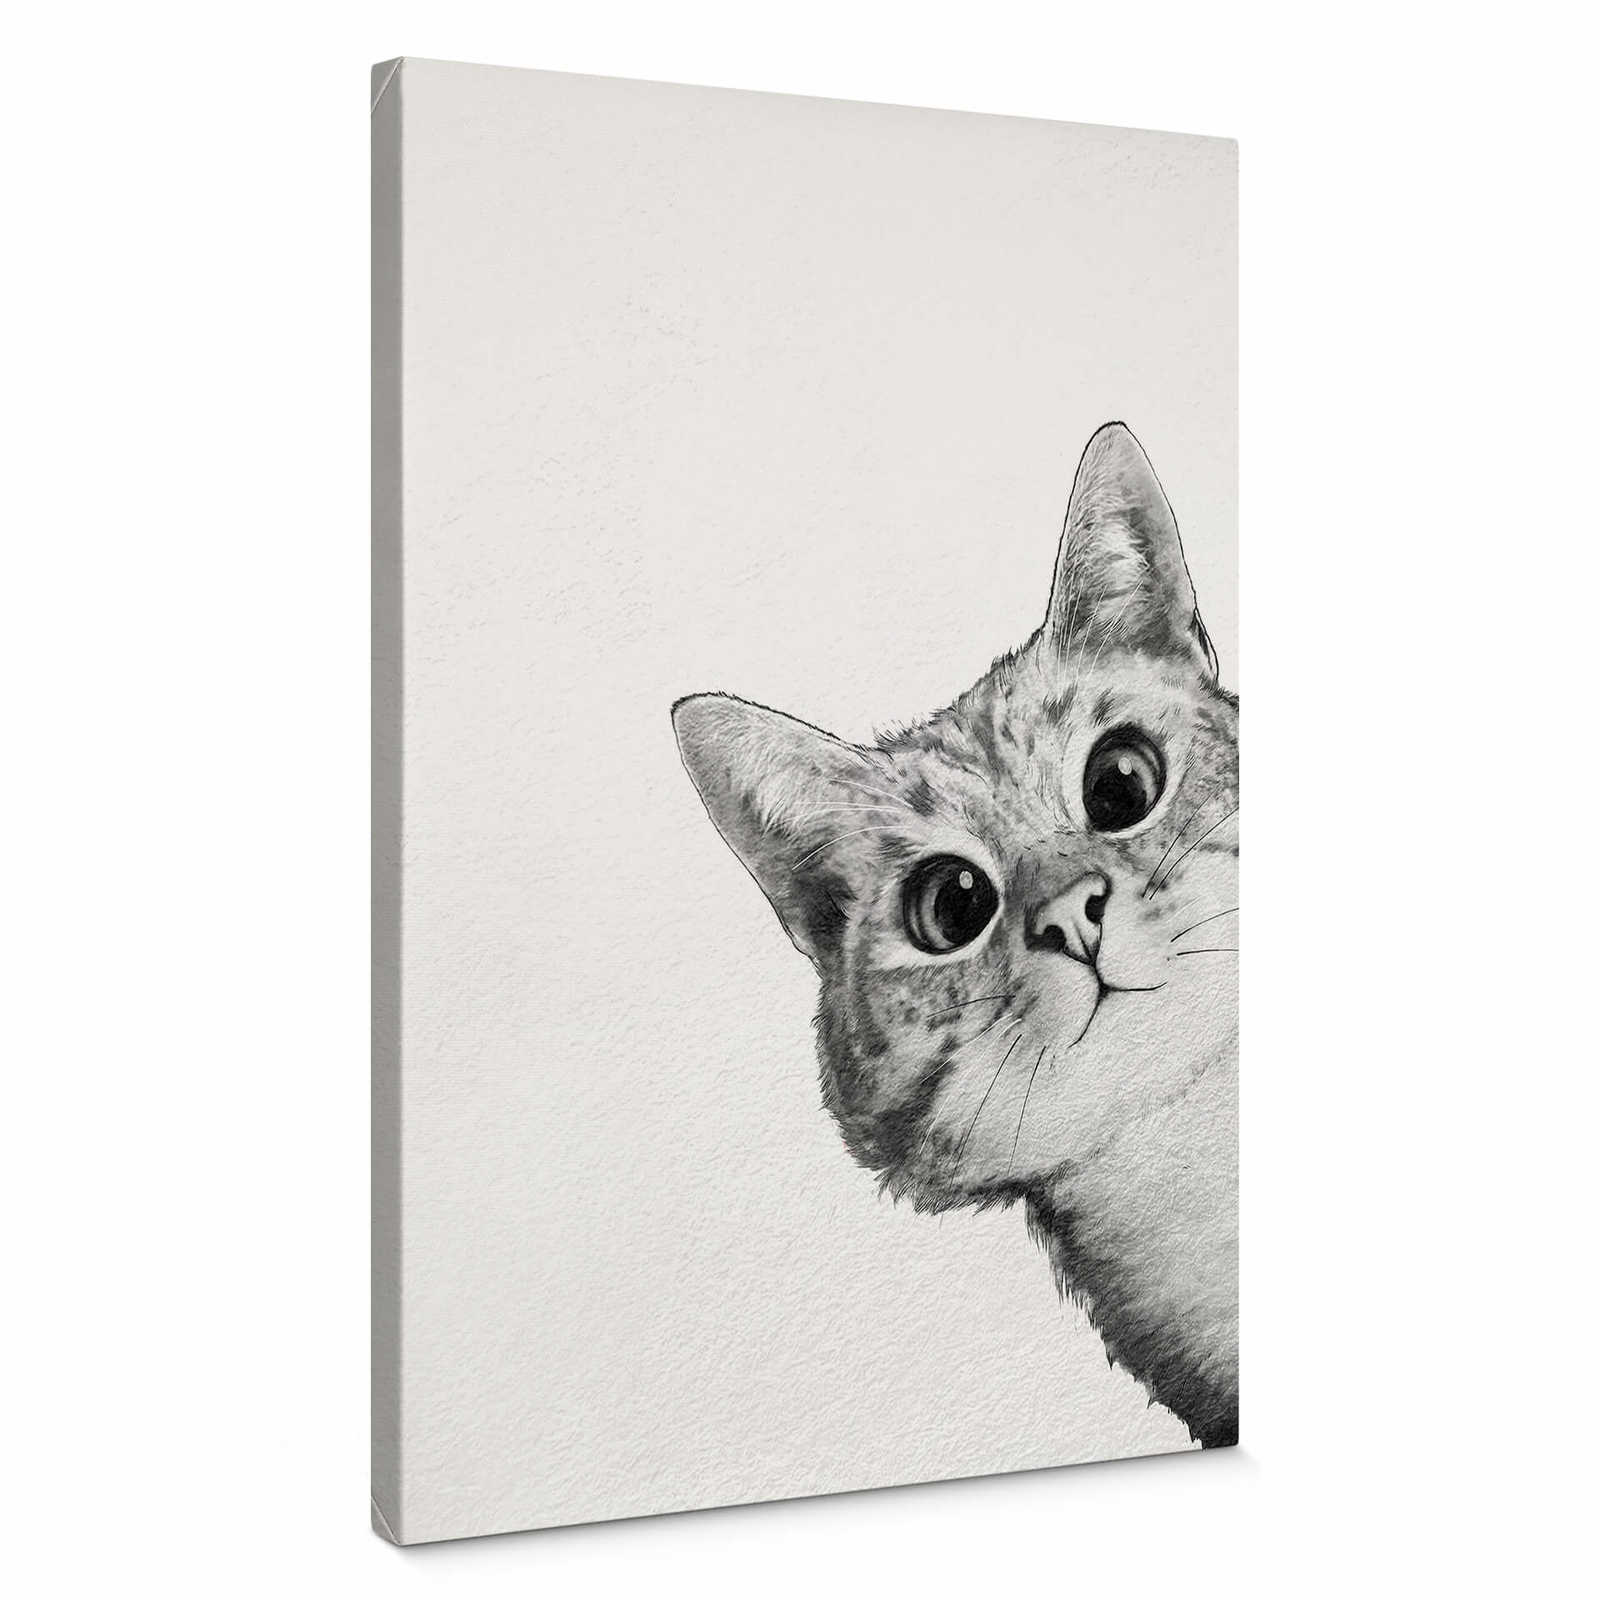         Leinwandbild "Sneaky Cat" von Graves, Katze in Schwarz-Weiß – 0,50 m x 0,70 m
    